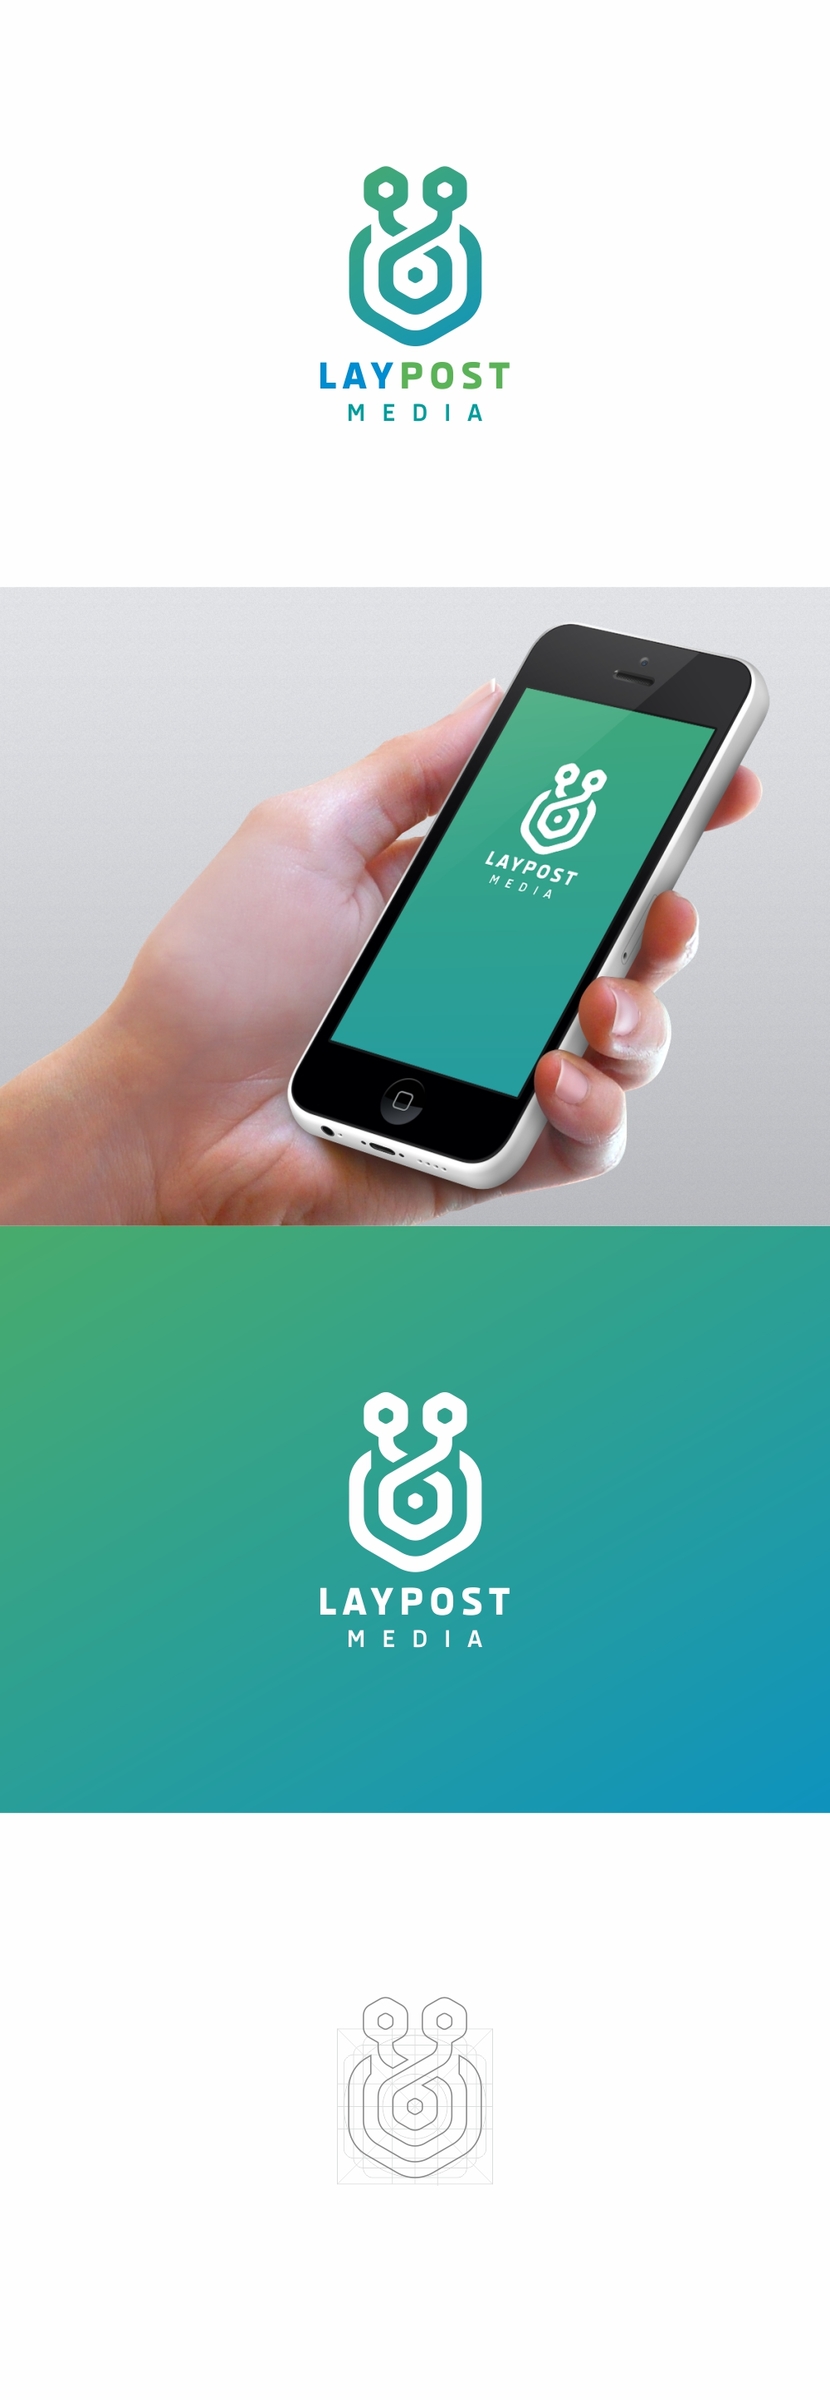 Создание логотипа для медиасайта LAYPOST.COM  -  автор Андрей Мартынович